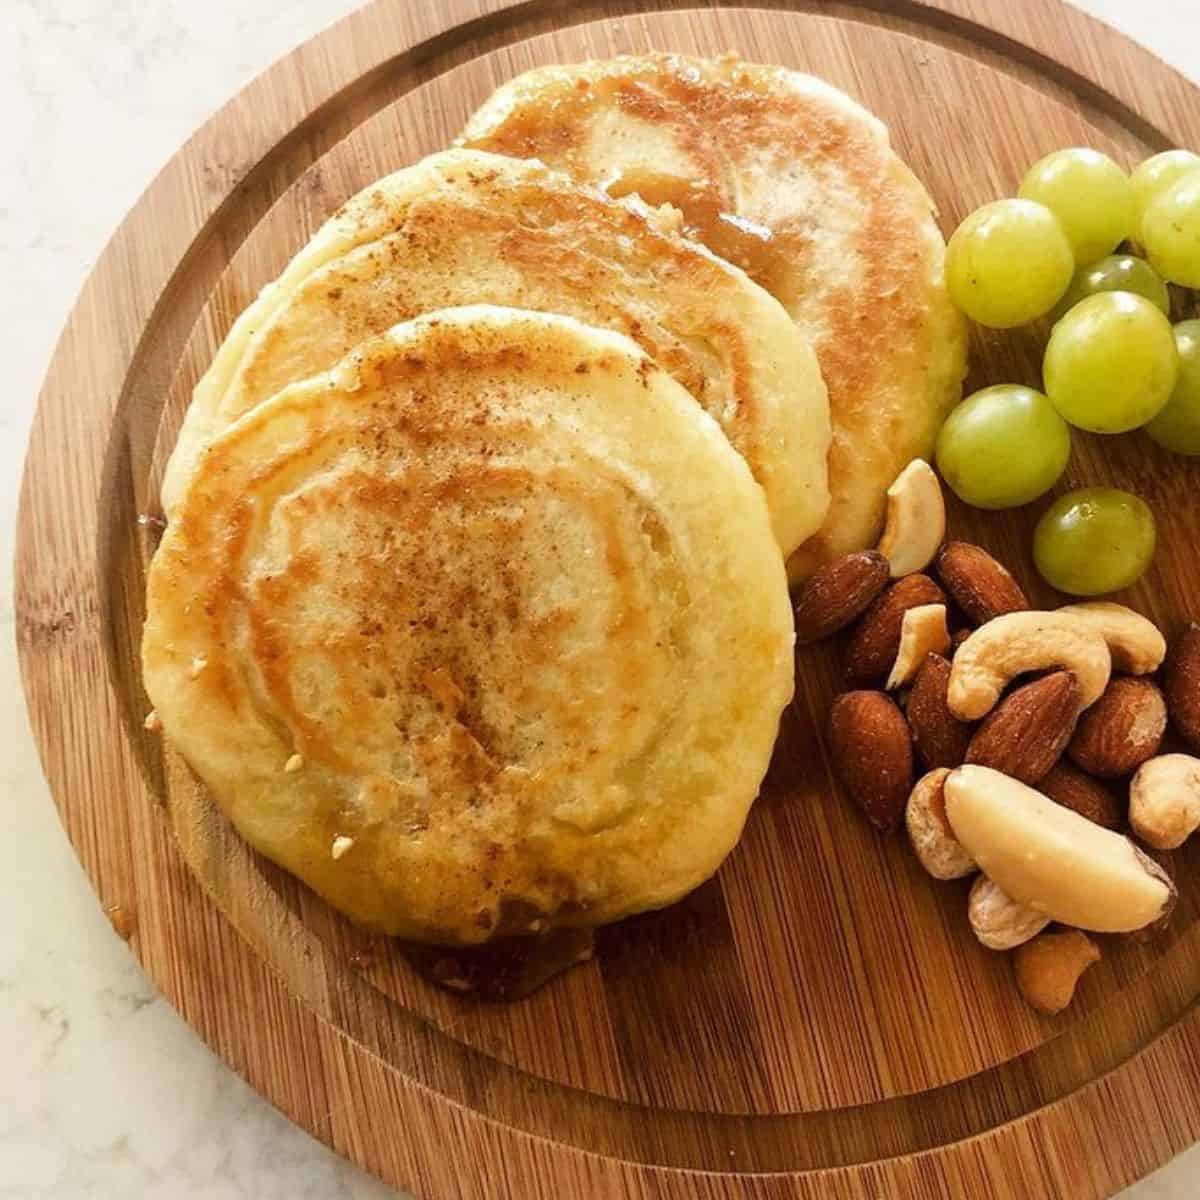 Korean sweet pancake on plate